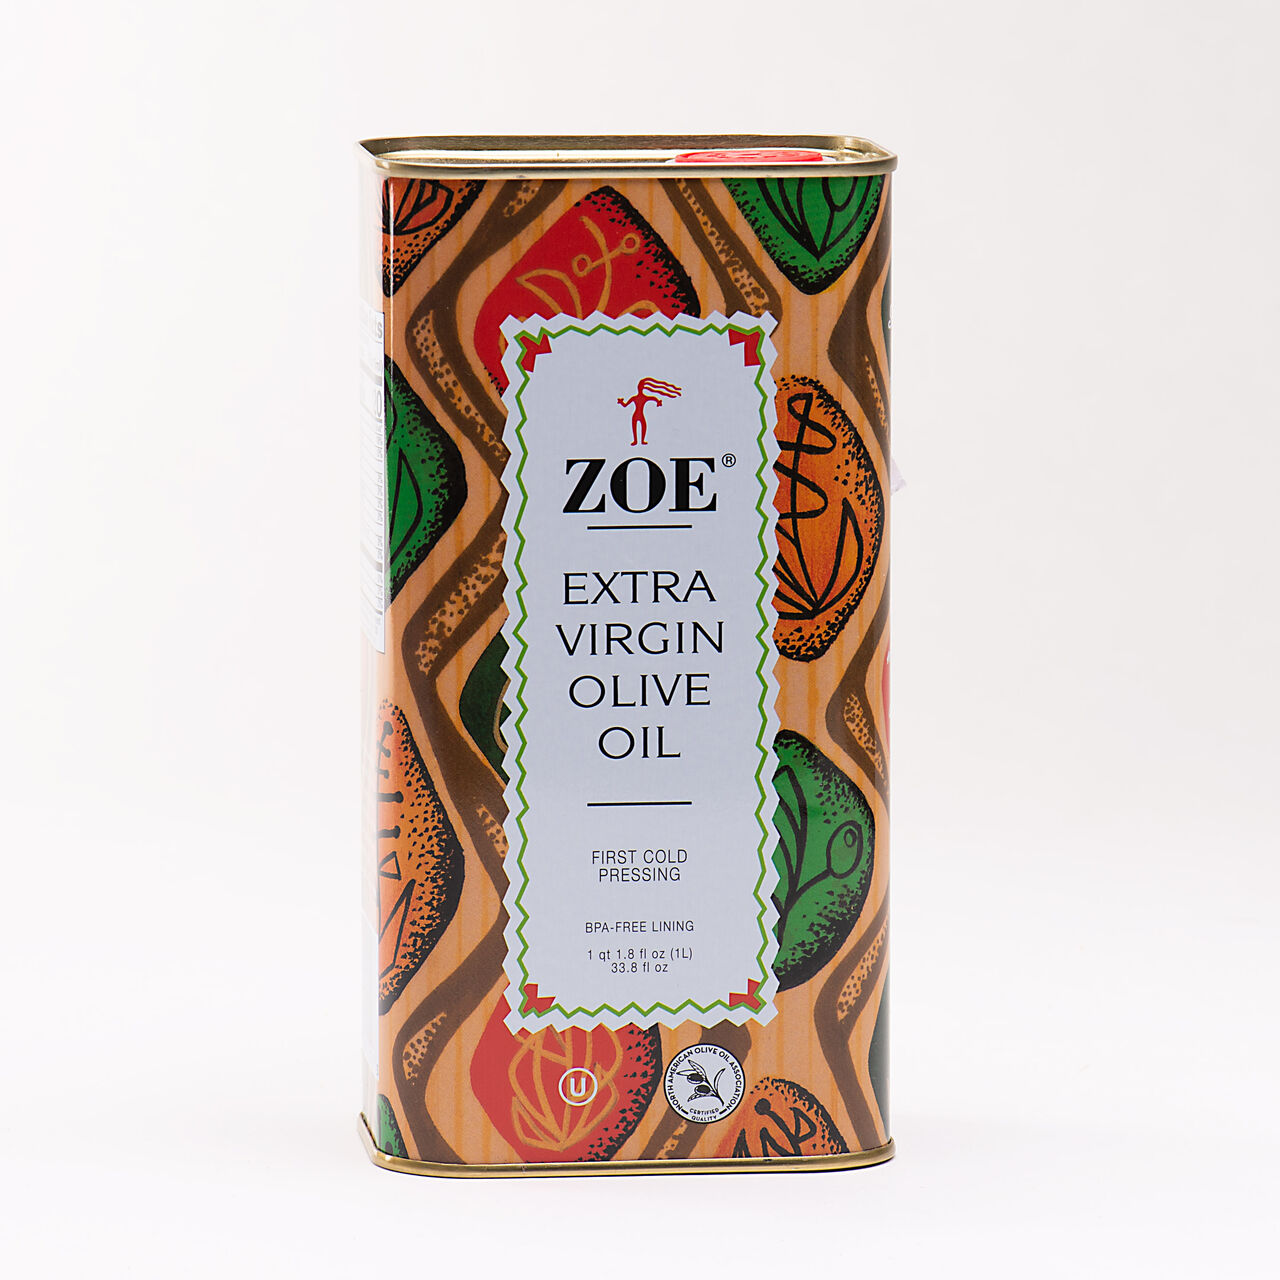 Zoe Extra Virgin Olive Oil 1-ltr, , large image number 0